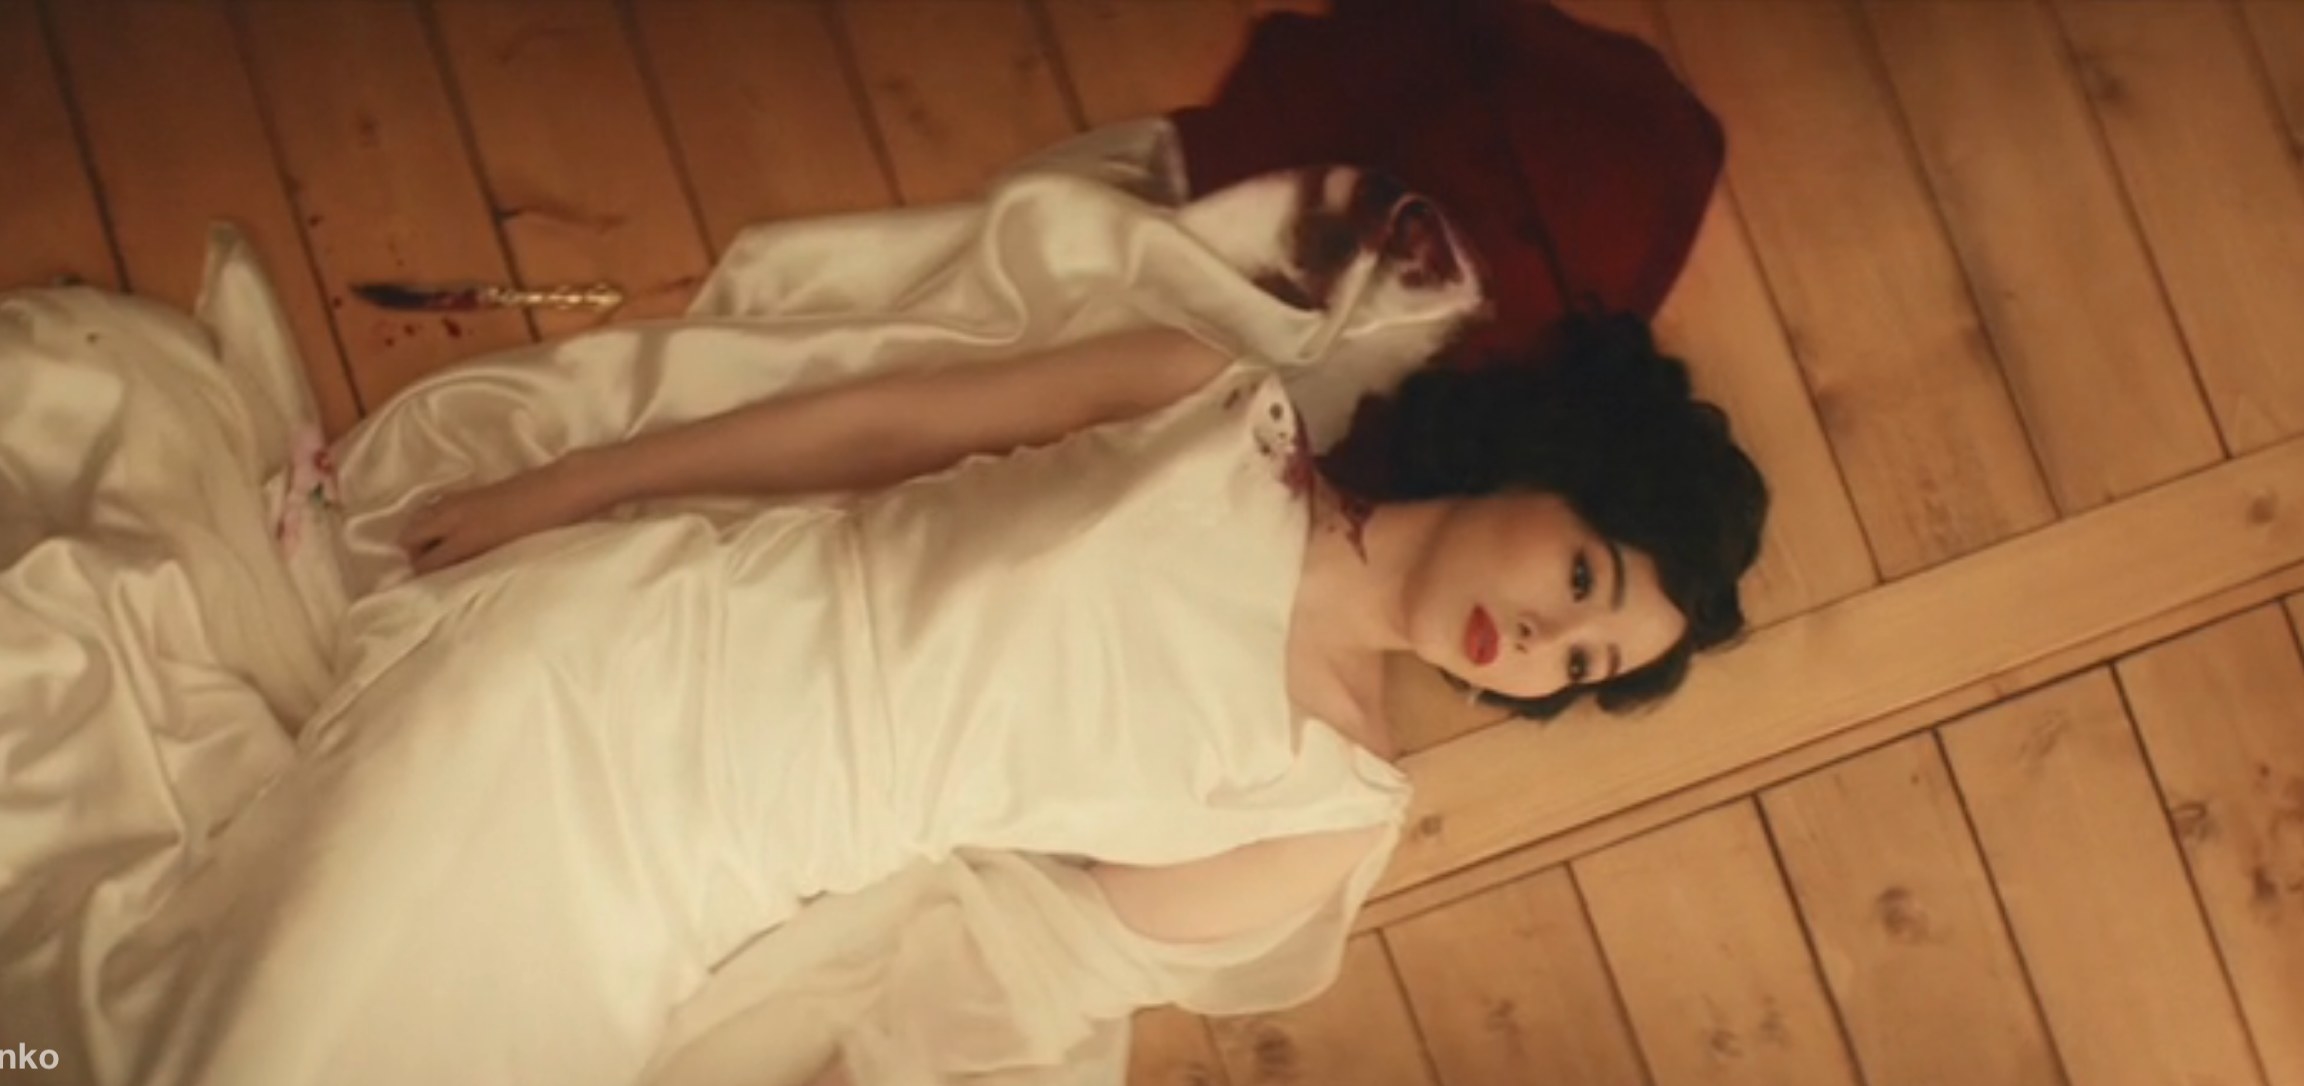 Korean singer lying in pool of blood after stabbing herself